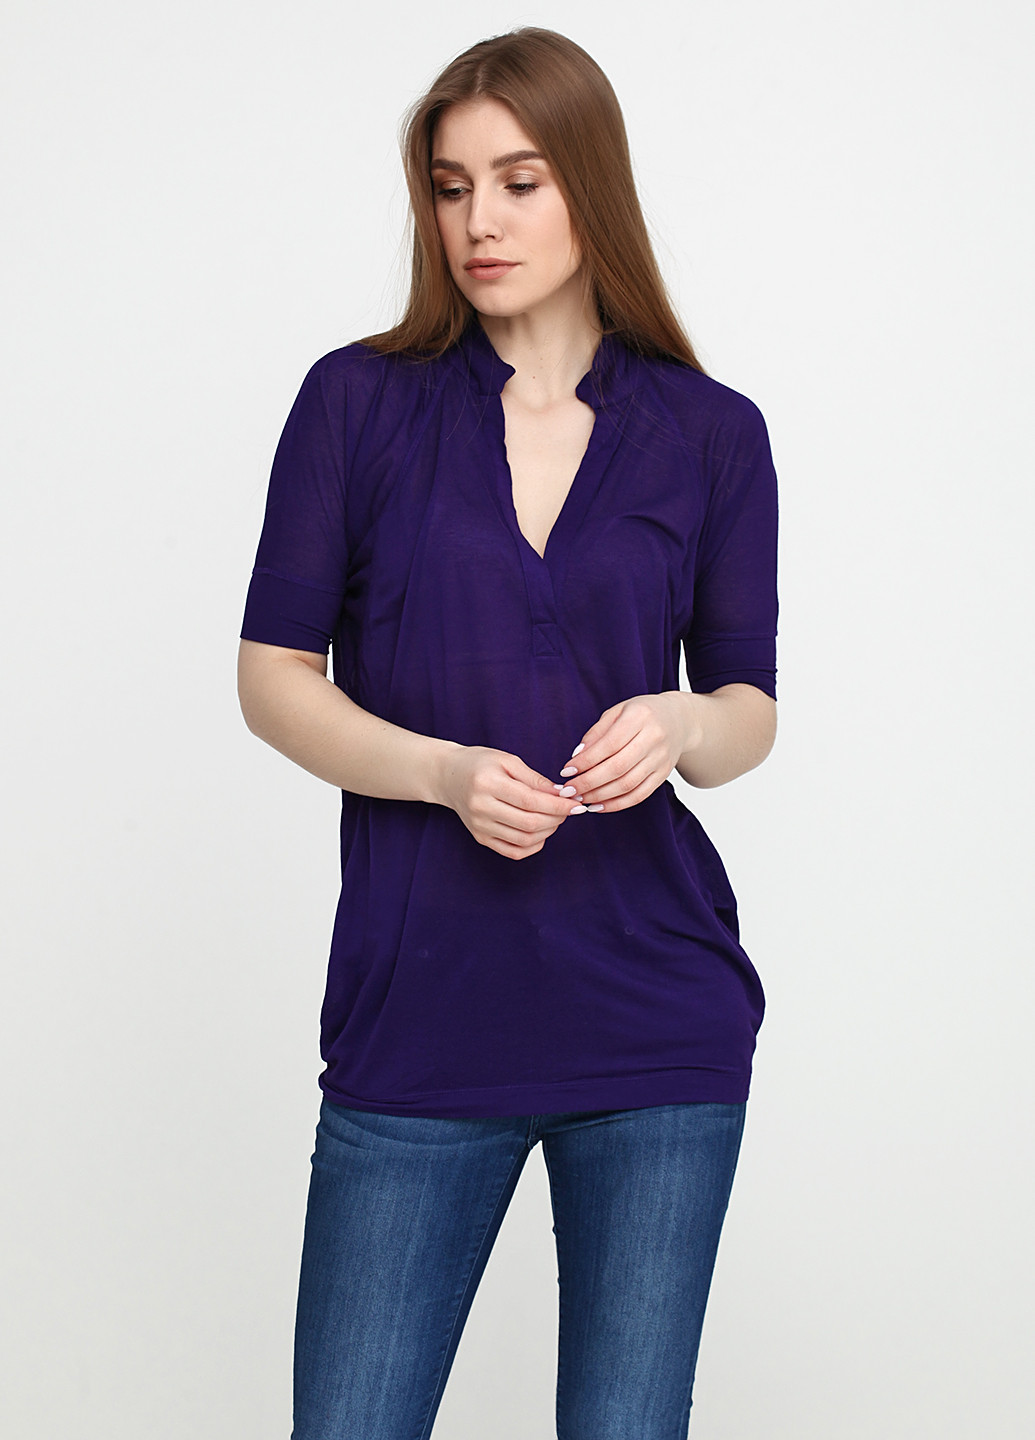 Фиолетовая женская футболка-поло Ralph Lauren однотонная